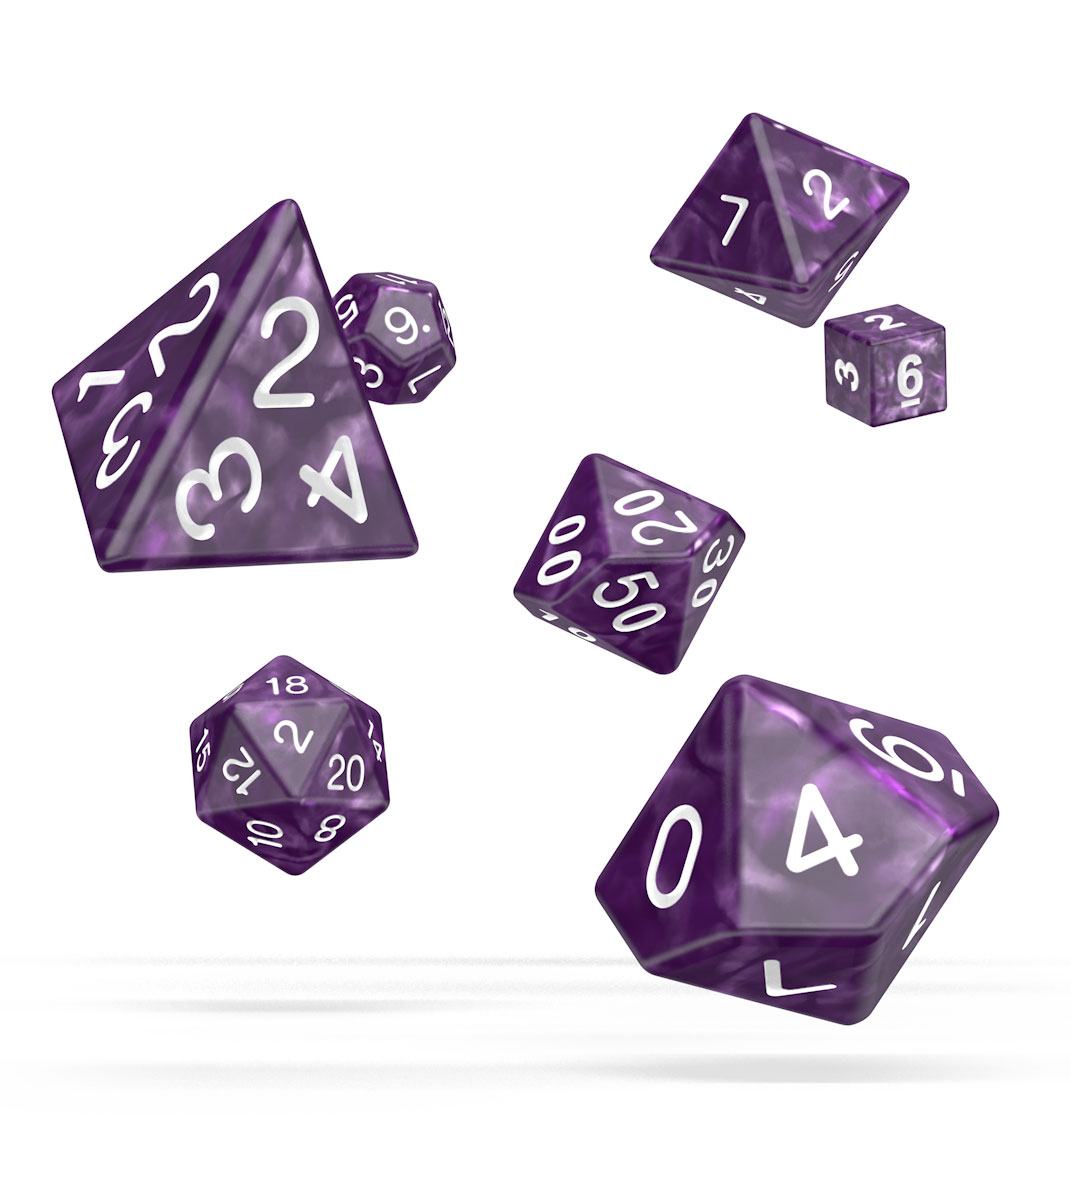 Kocka Set (7) - Oakie Doakie Dice RPG Set Marble - Purple